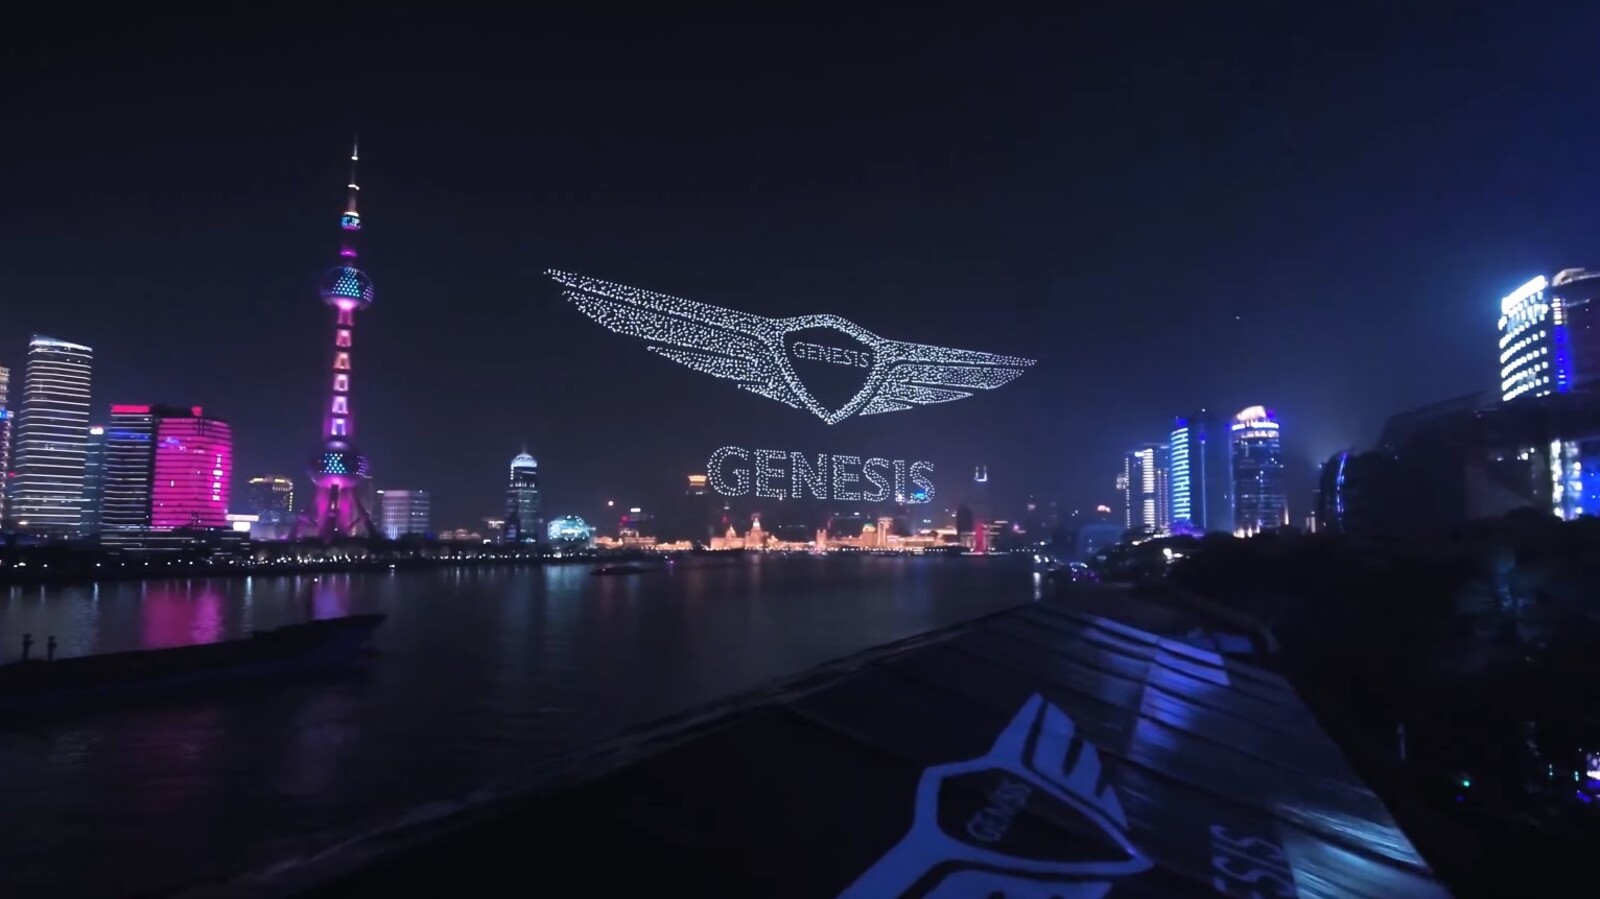 Genesis, la filiale de luxe de Hyundai, dévoile son logo au-dessus de Shanghai à l'aide de 3281 drones